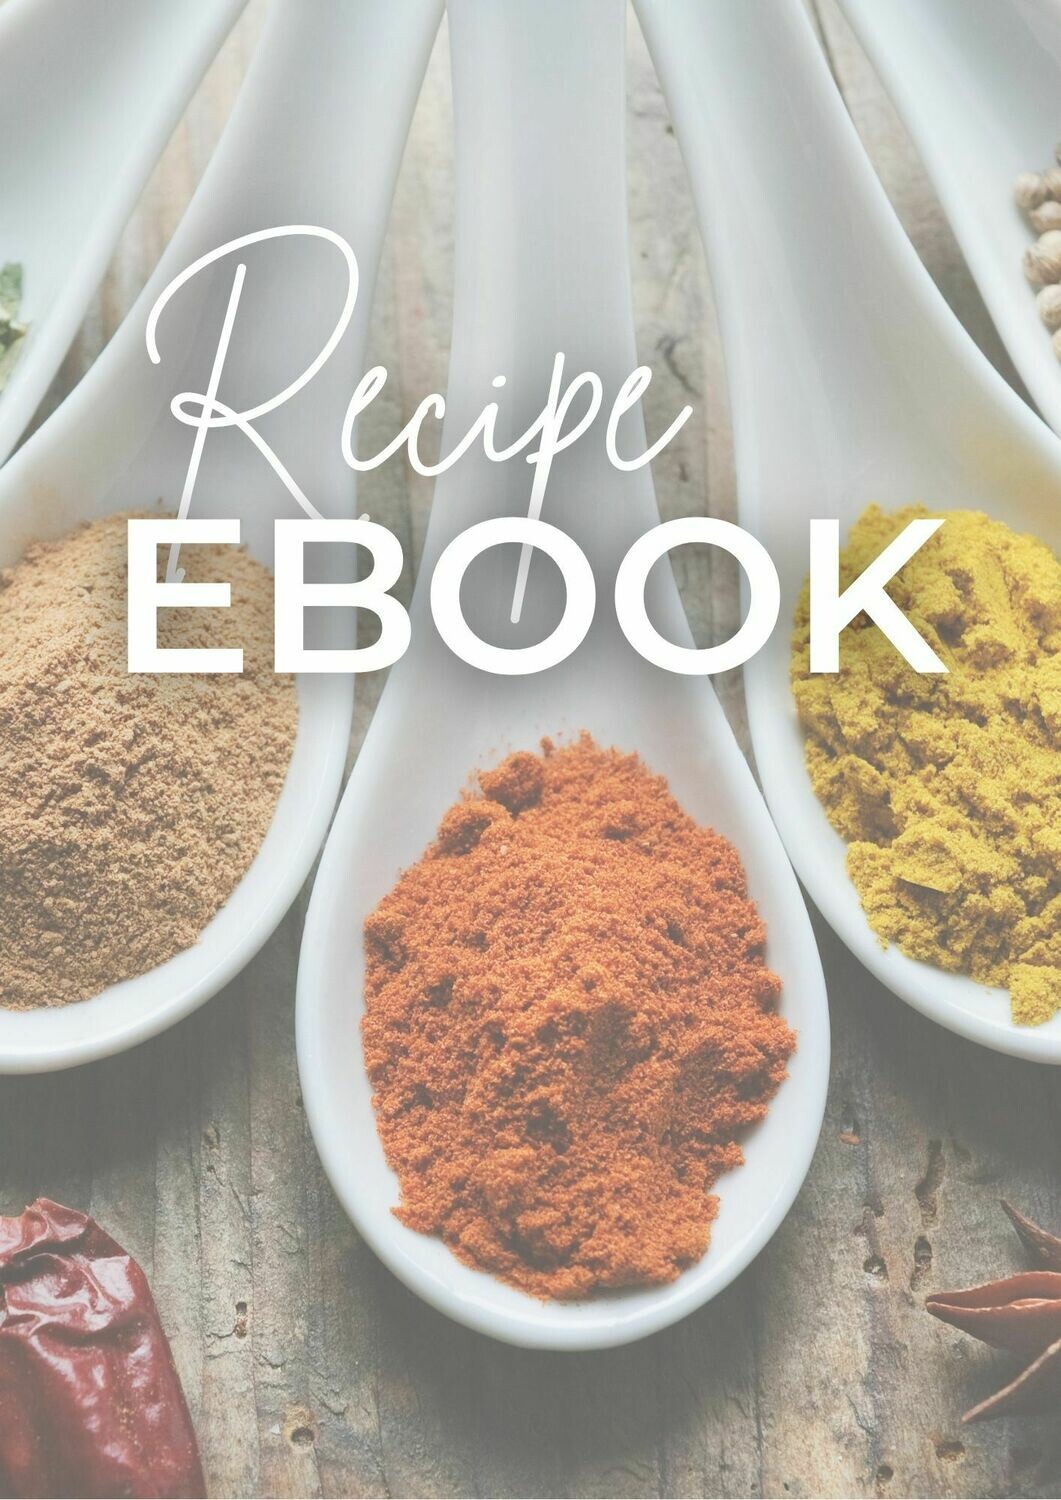 Recipe E-Book